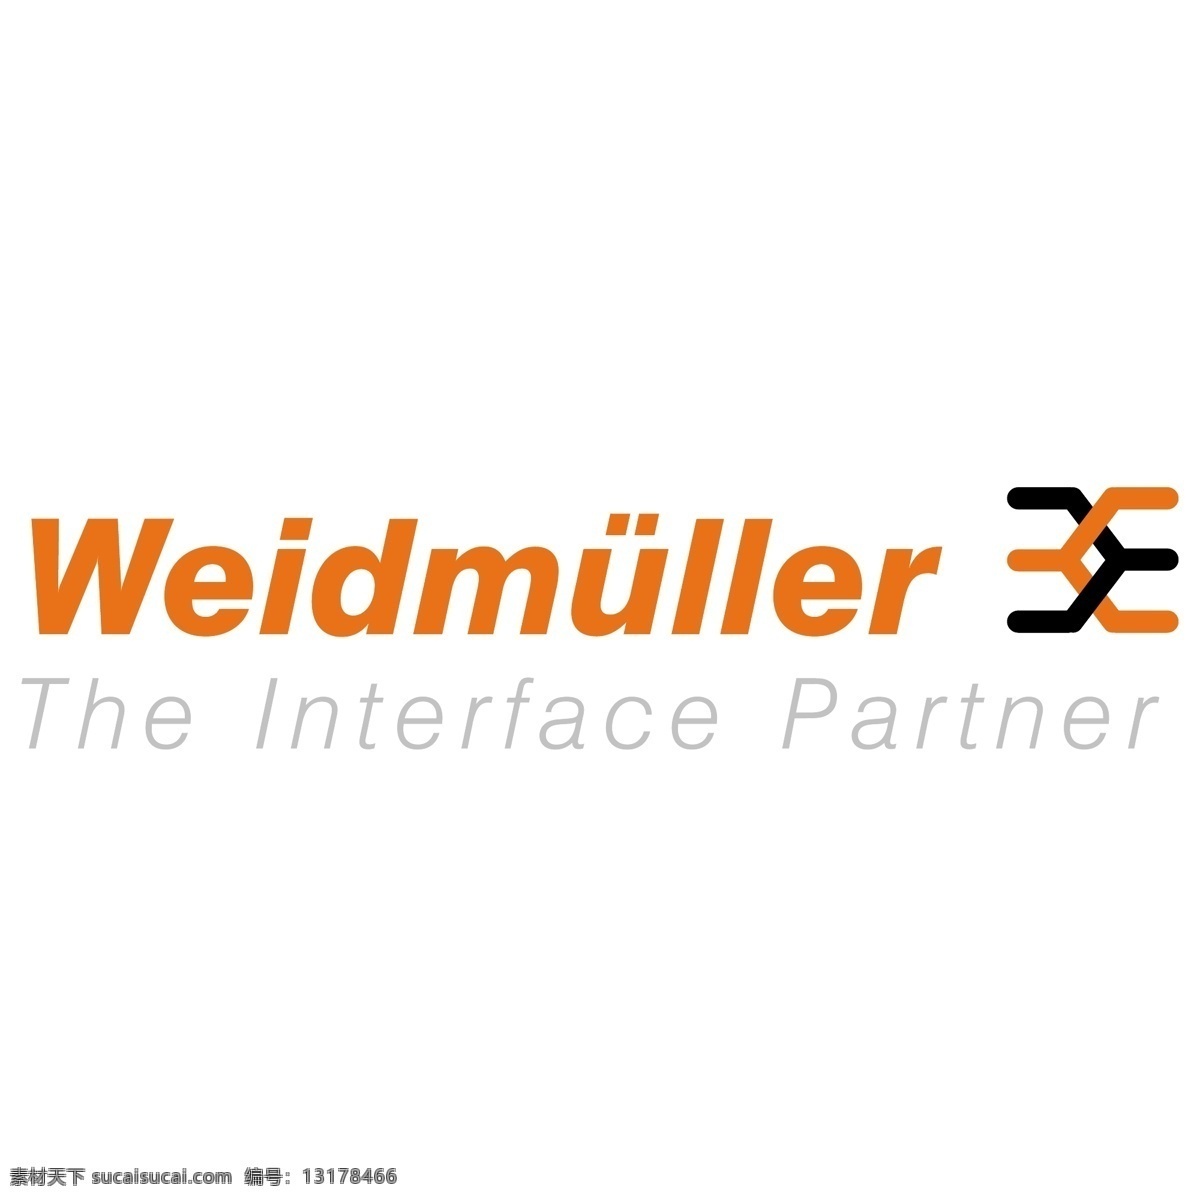 魏德 米勒 公司 标志 并标识为免费 psd源文件 logo设计